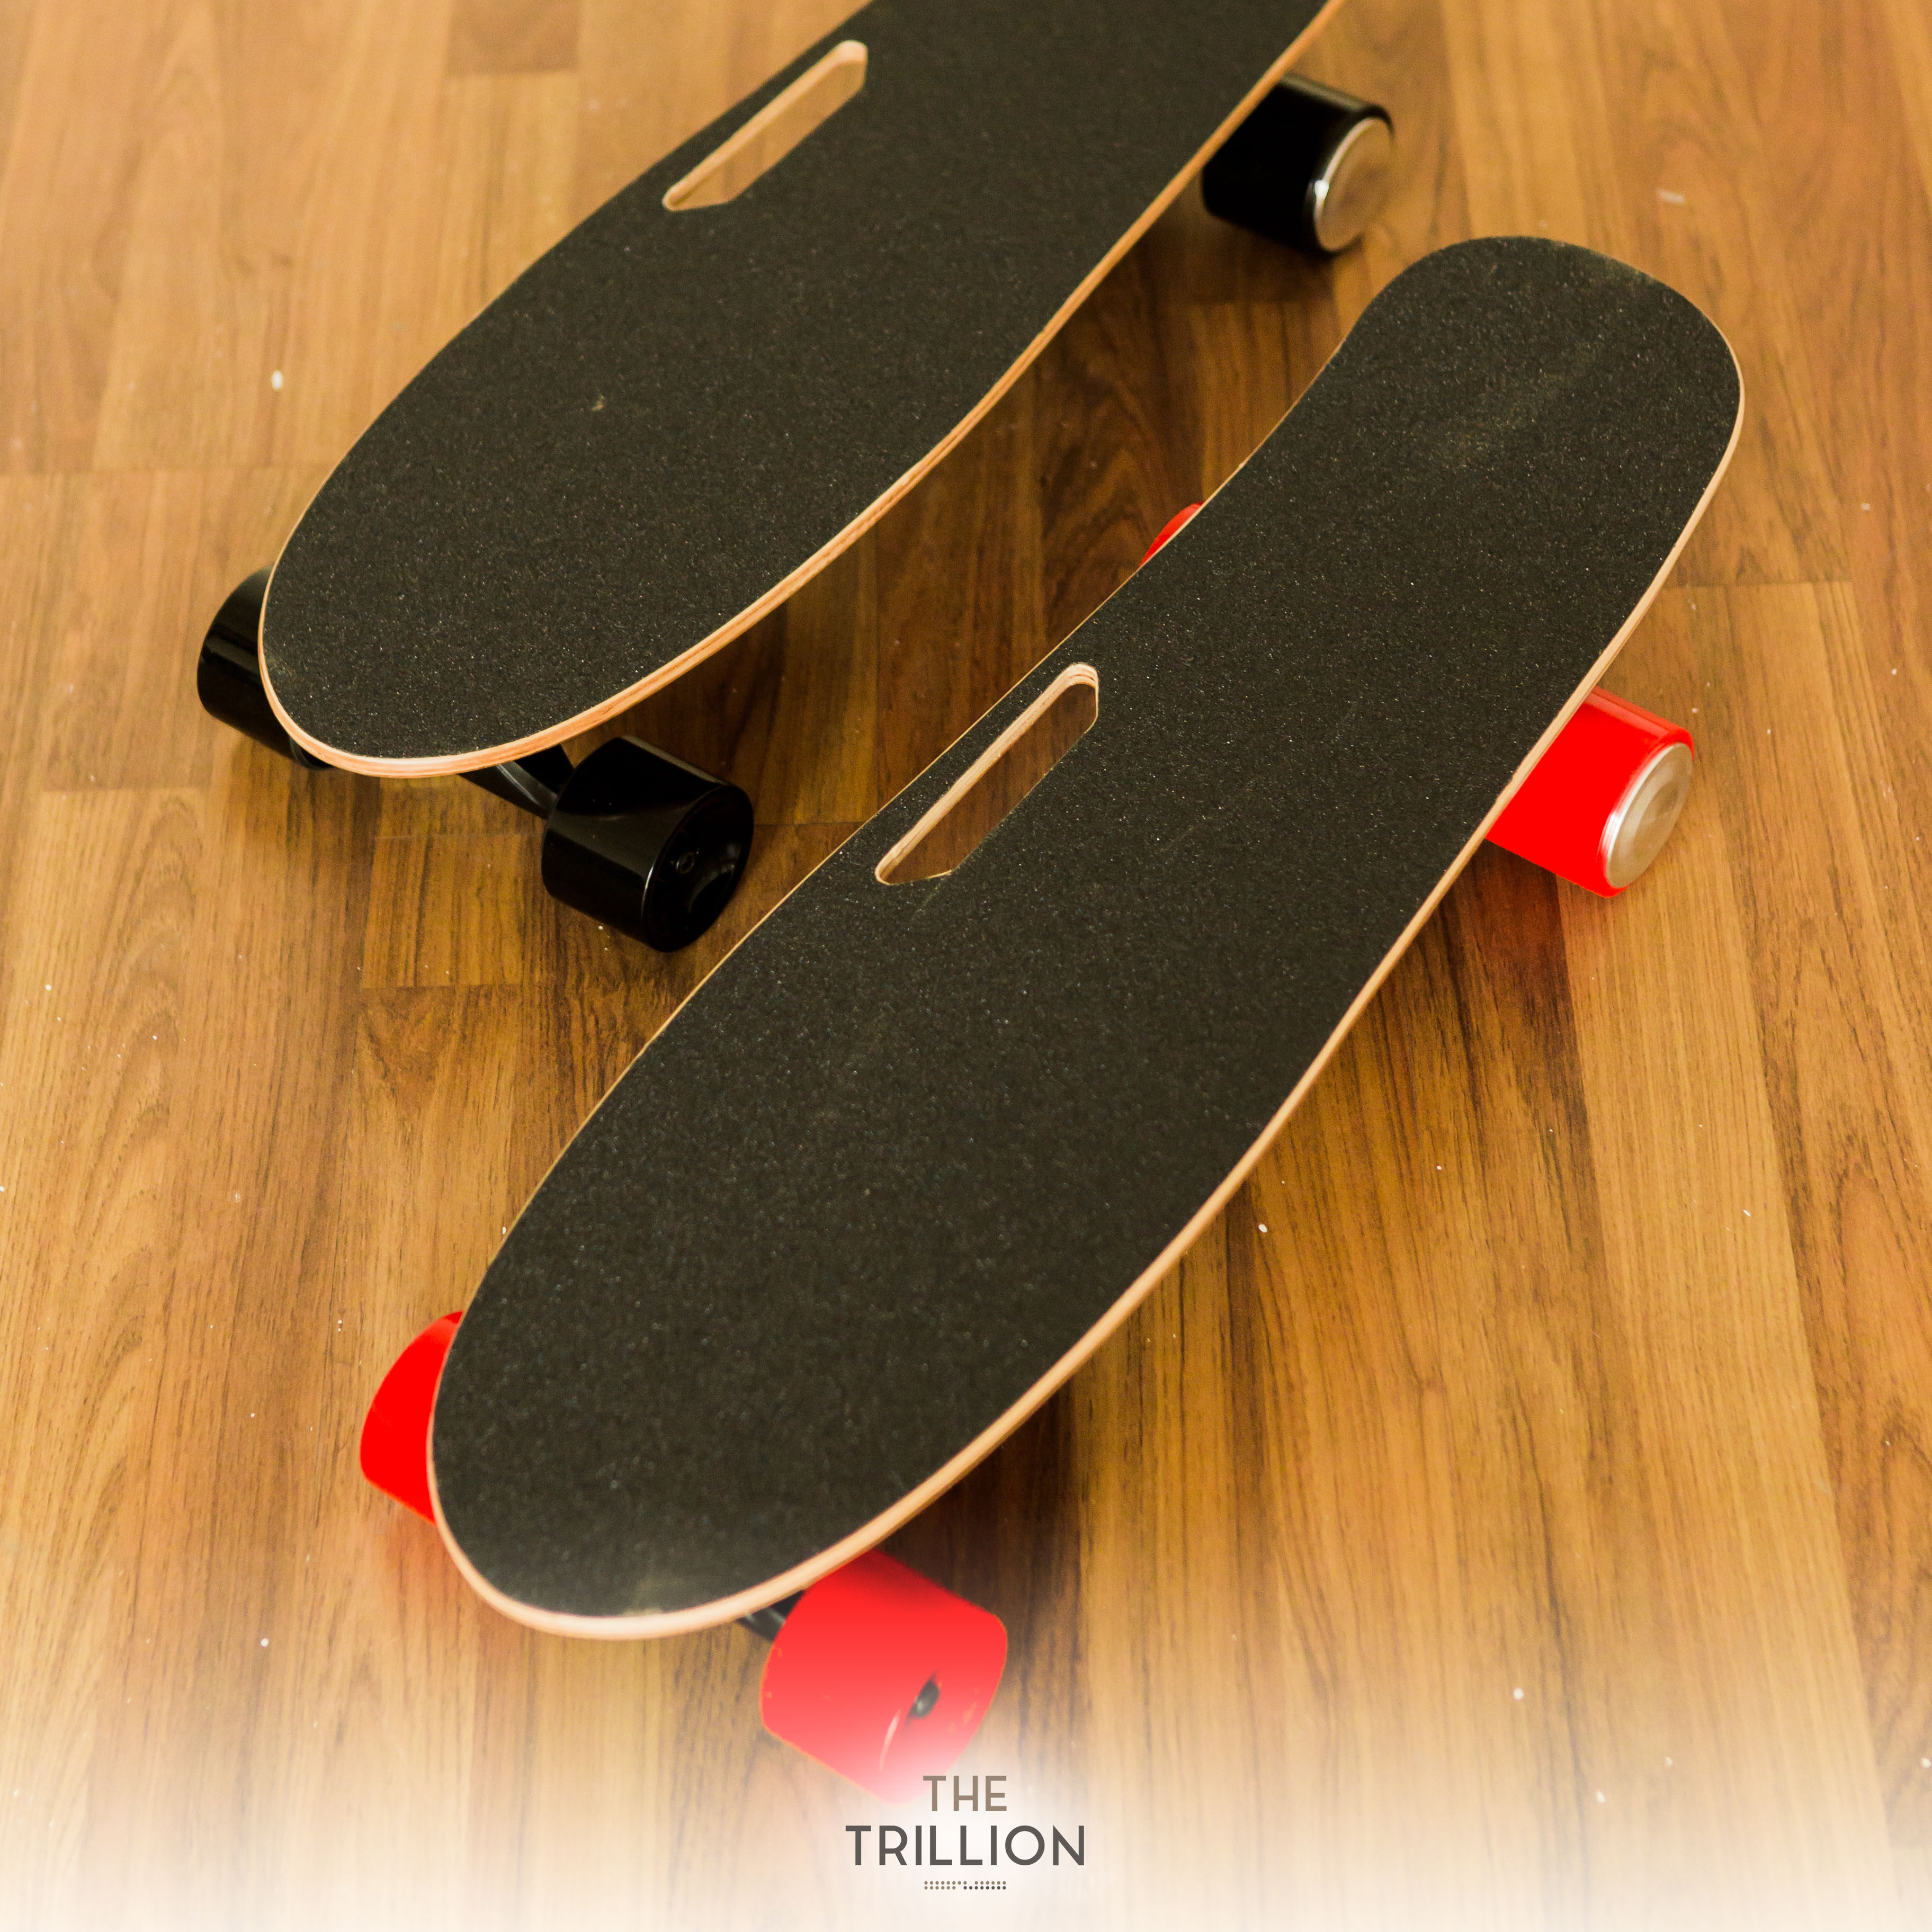 สินค้าพร้อมส่ง สเก็ตบอร์ดไฟฟ้า Electric Skateboard สเก็ตบอร์ด 4 ล้อมีล้อสามสีให้เลือกดำ แดง ส้ม